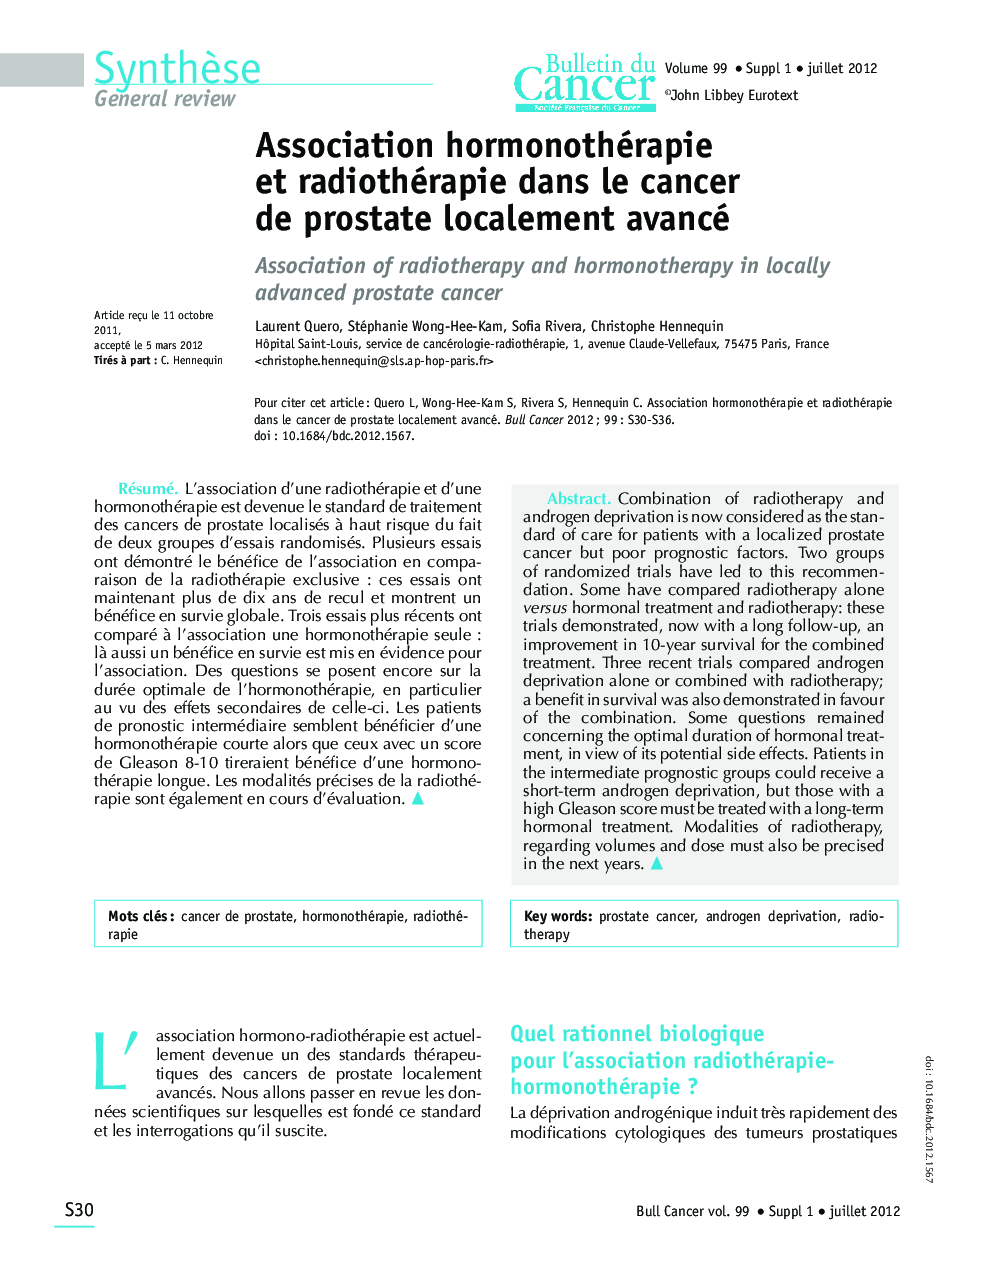 Association hormonothérapie et radiothérapie dans le cancer de prostate localement avancé